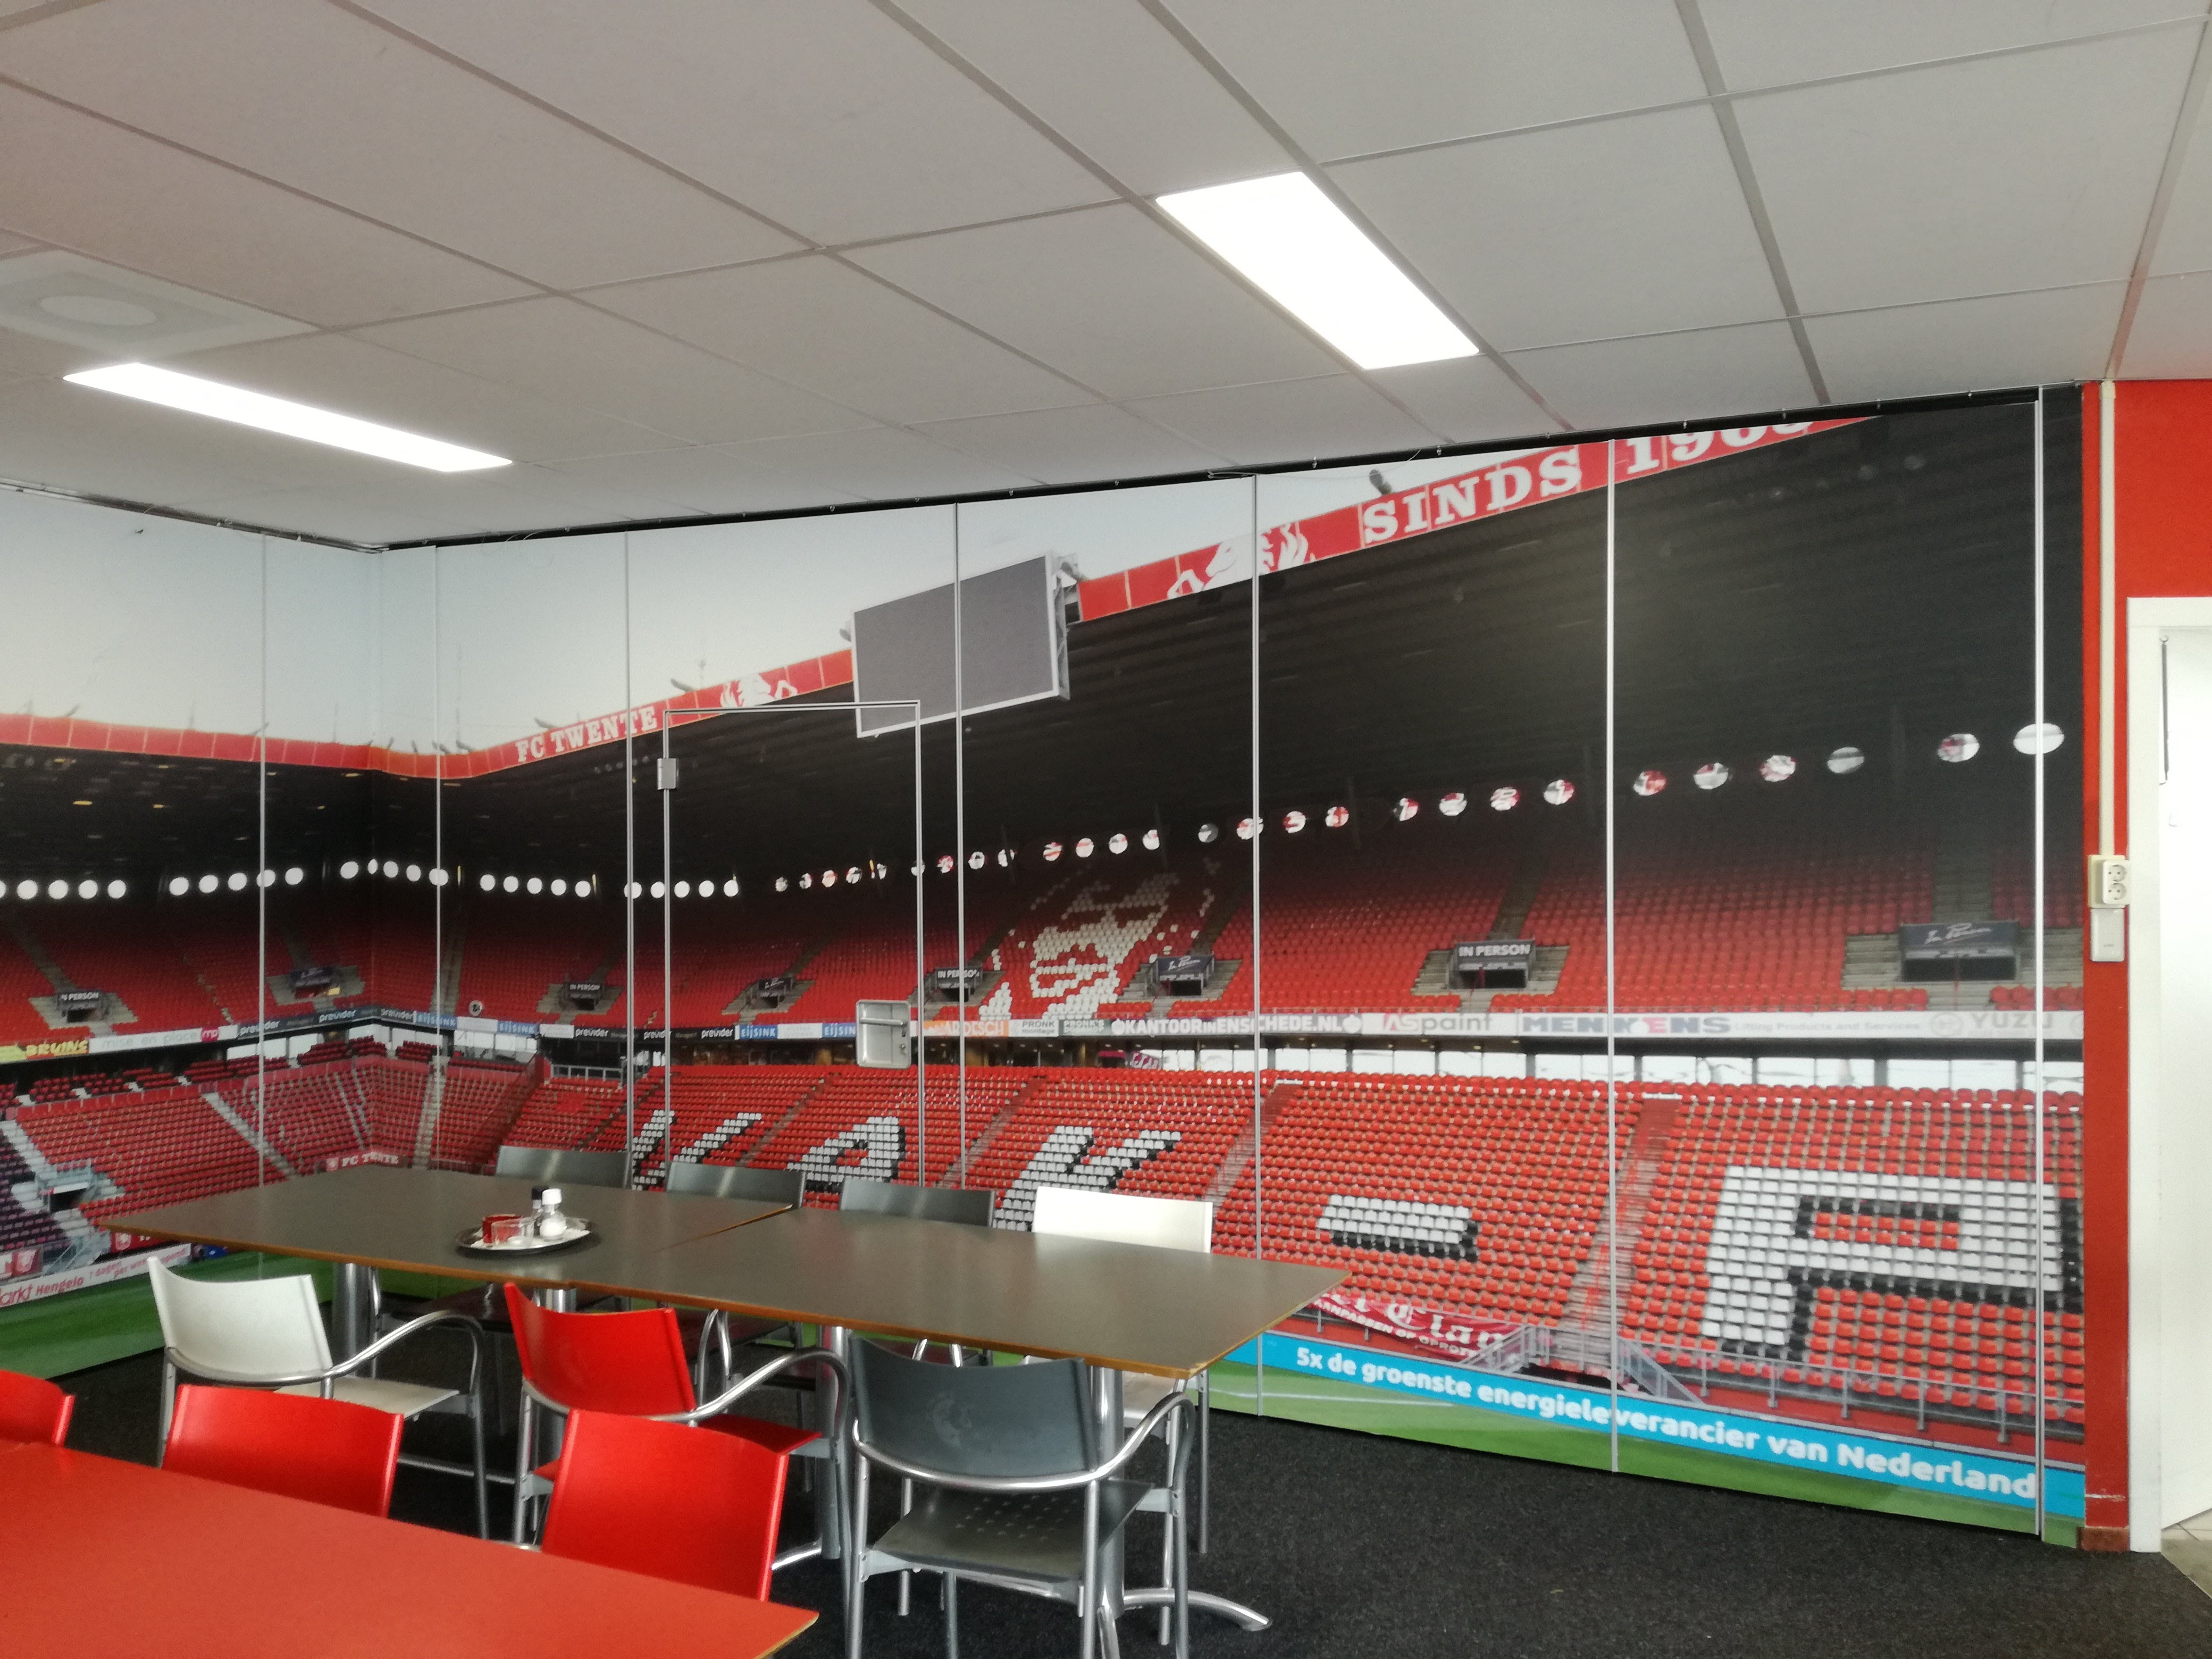 Sportman Rudyard Kipling Vader fage Wandvisual - FC Twente - AS Paint Vriezenveen